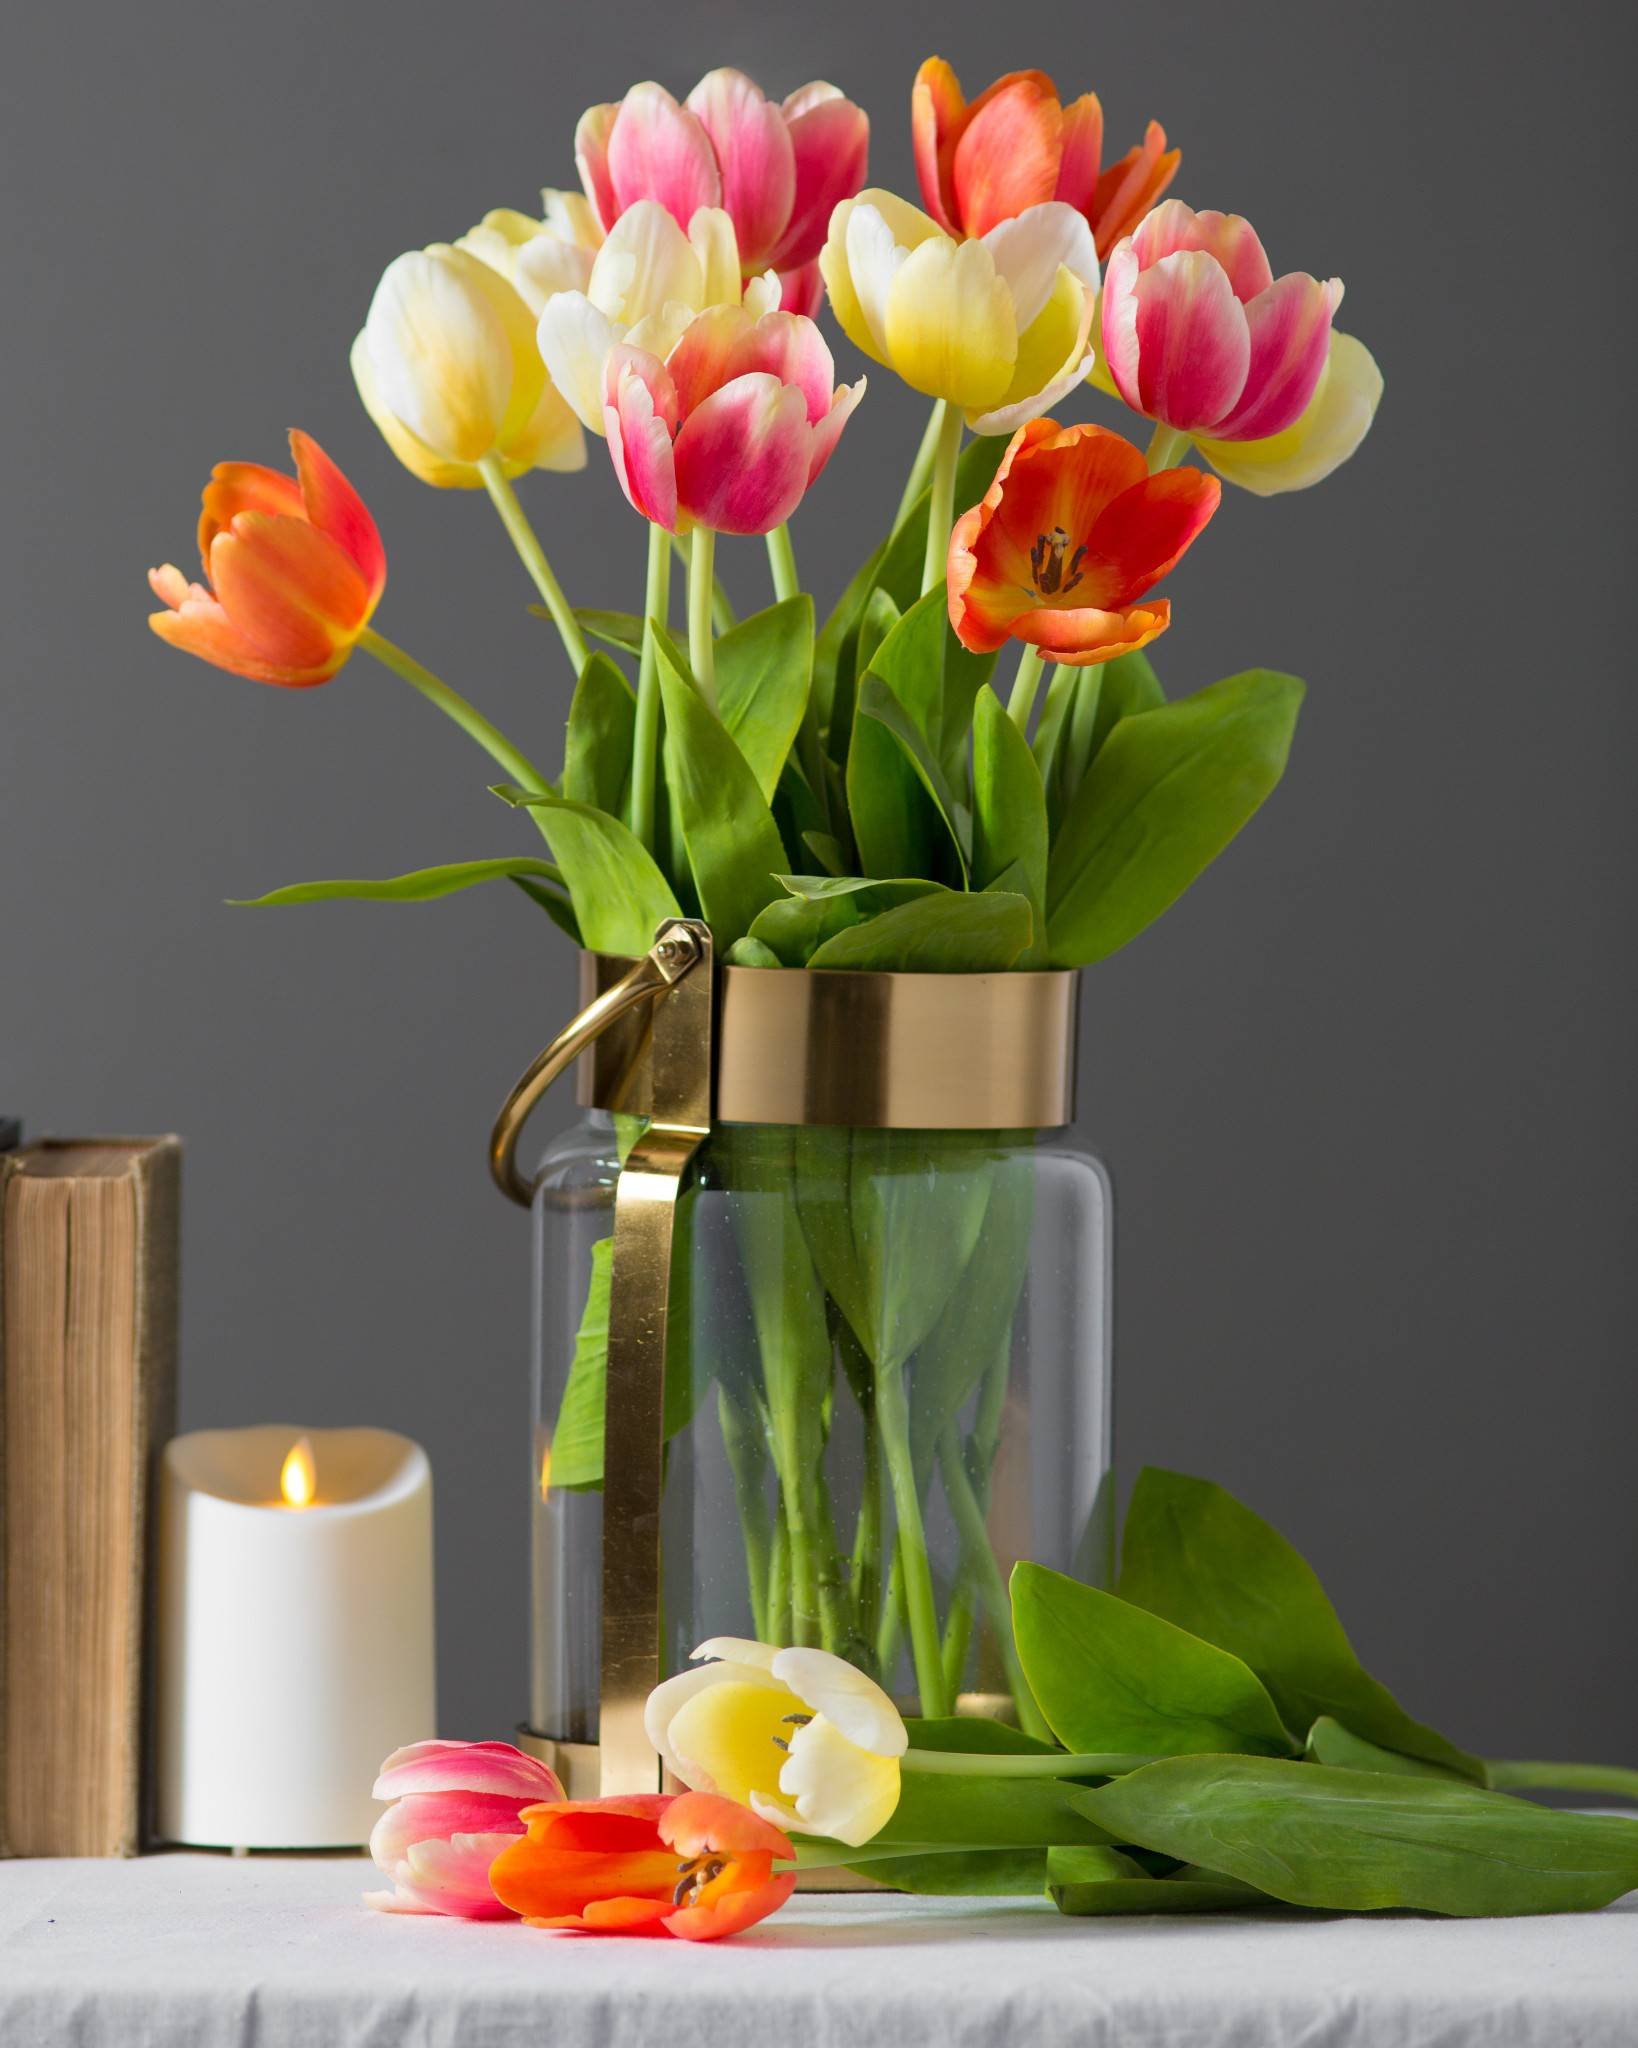 Тюльпаны ставить в холодную или теплую воду. Тюльпаны в вазе. Тюльпаны в стеклянной вазе. Дульбаны в ваззе. Тюльпаны в вазах.